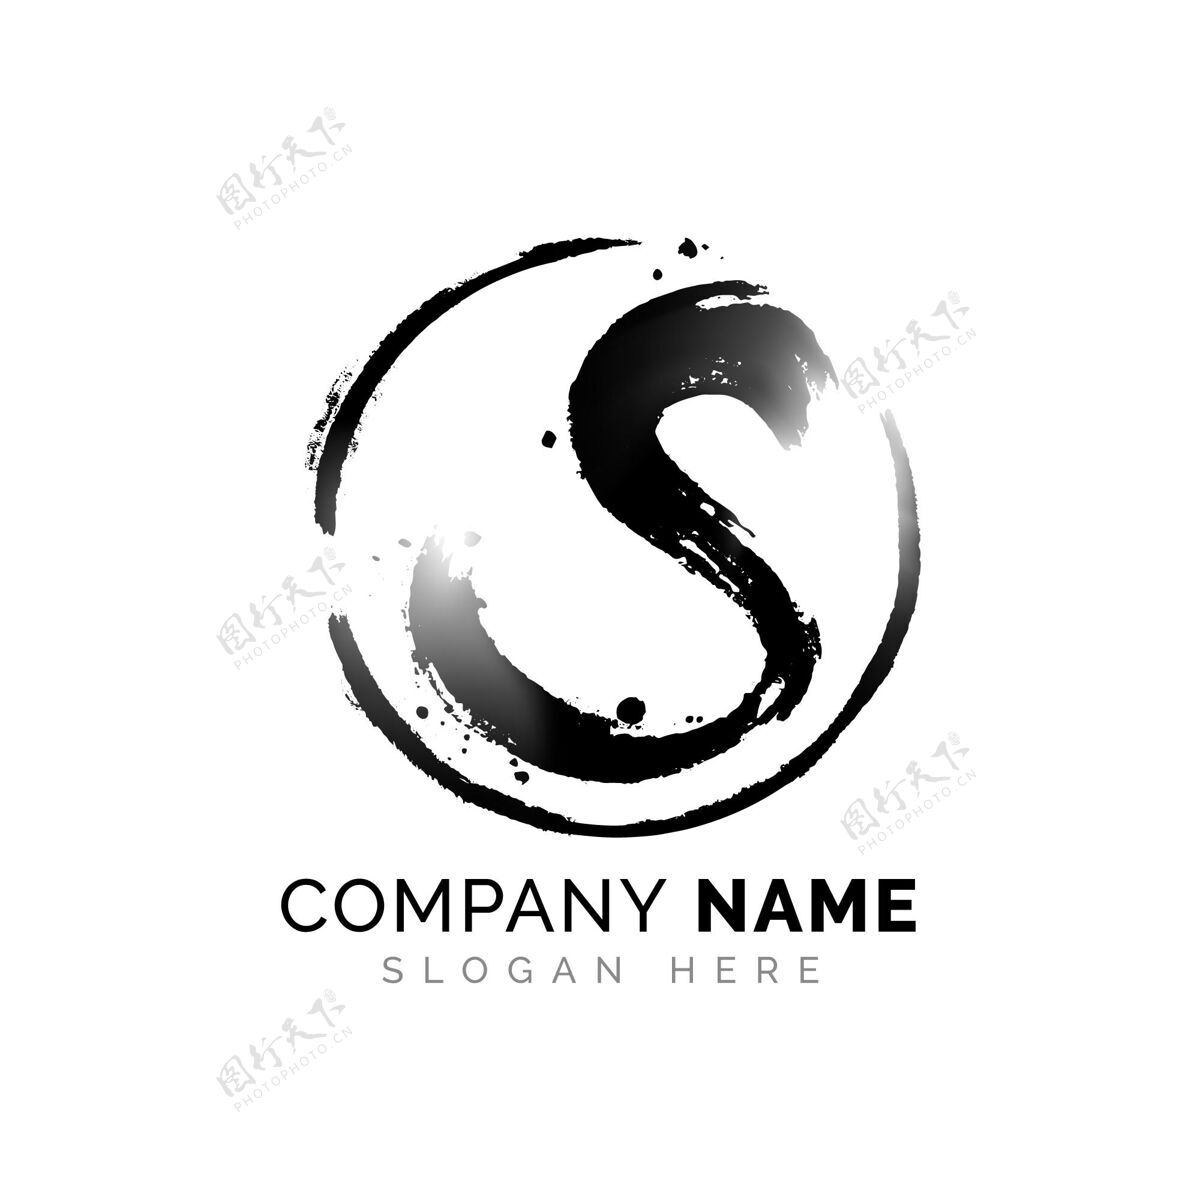 公司标识手绘s标志模板S商标企业商标